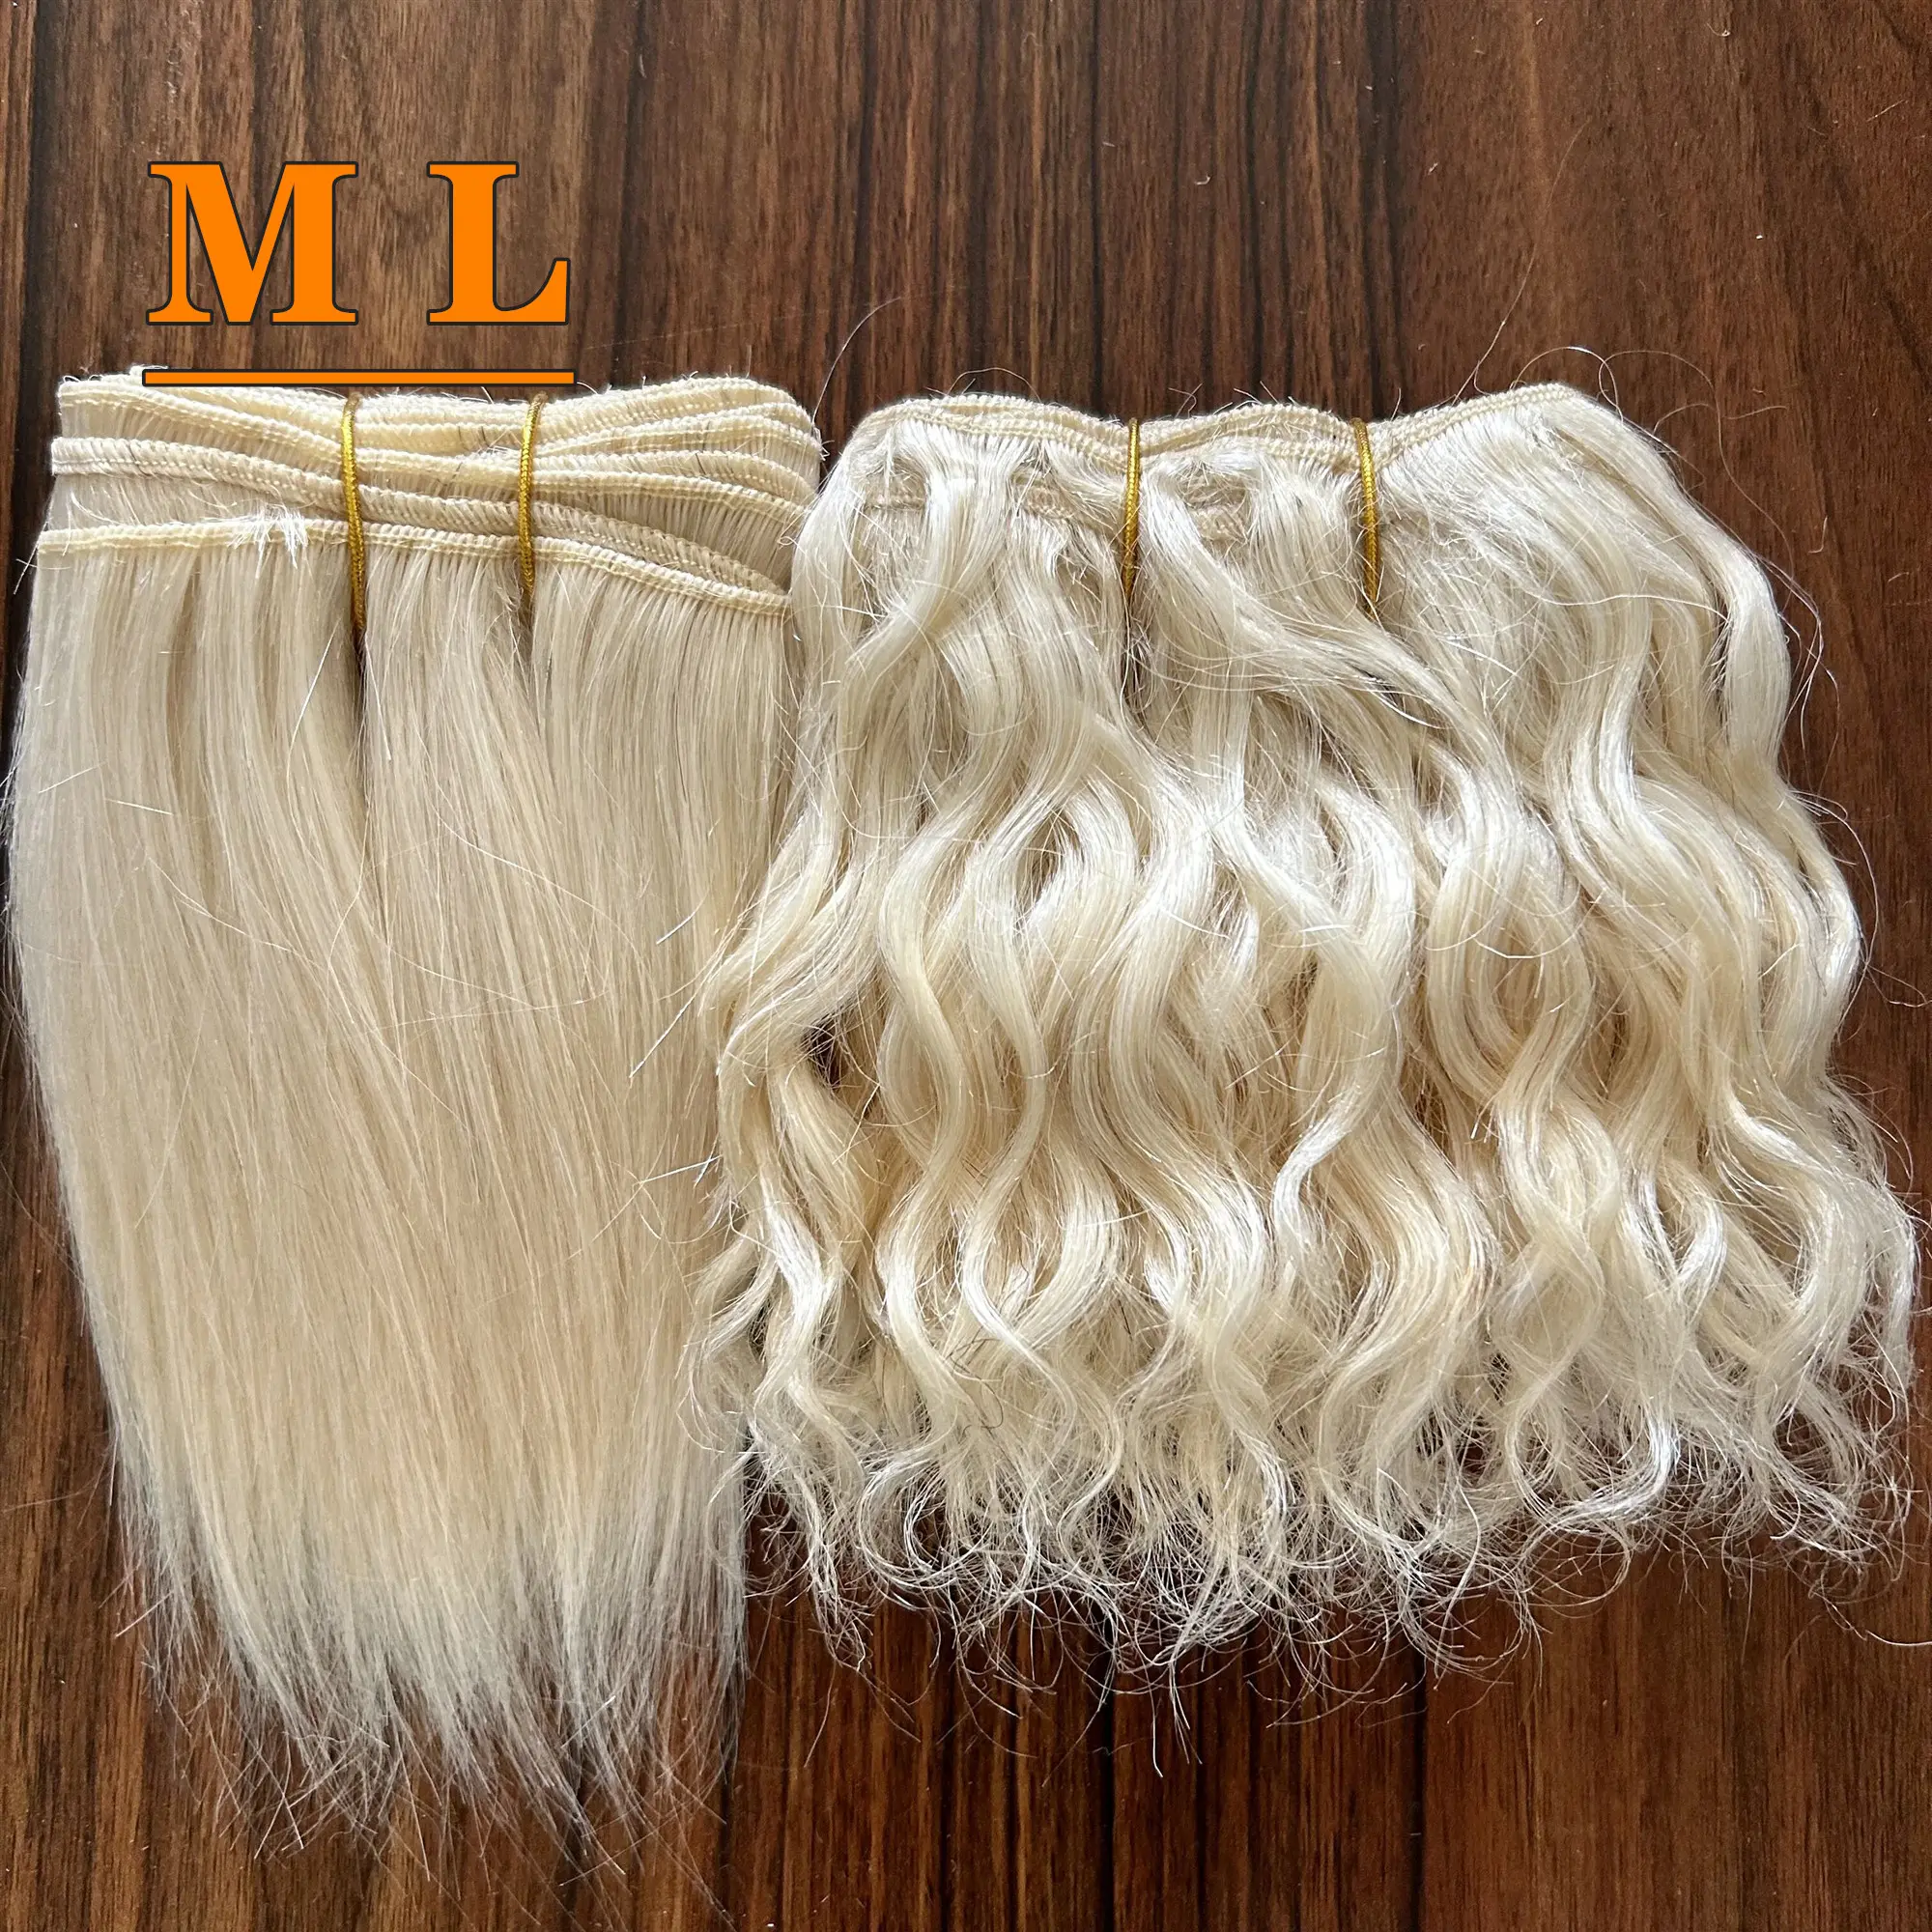 613 # Mohair Angora lana China muñeca extensiones de cabello Mohair cabra pelo para DIY Blyth muñecas